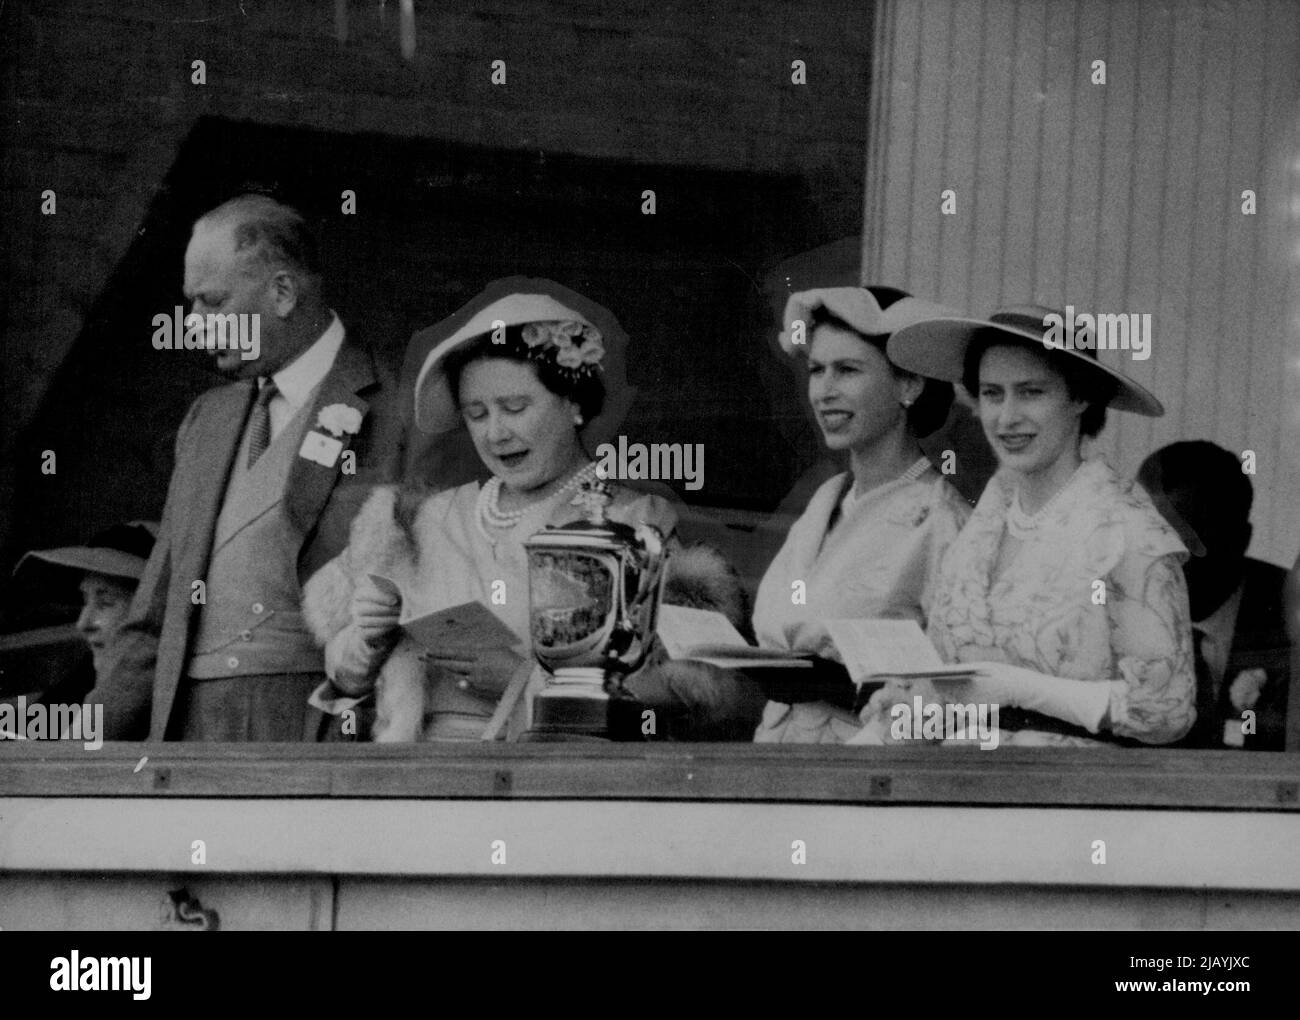 La famille royale avec la coupe de chasse -- vu avec la coupe de chasse dans la boîte royale d'Ascot cet après-midi, 16 juin, sont la reine Elizabeth II, Elizabeth la reine mère, la princesse Margaret et le duc de Gloucester. 16 juin 1954. (Photo par photo de presse associée). Banque D'Images